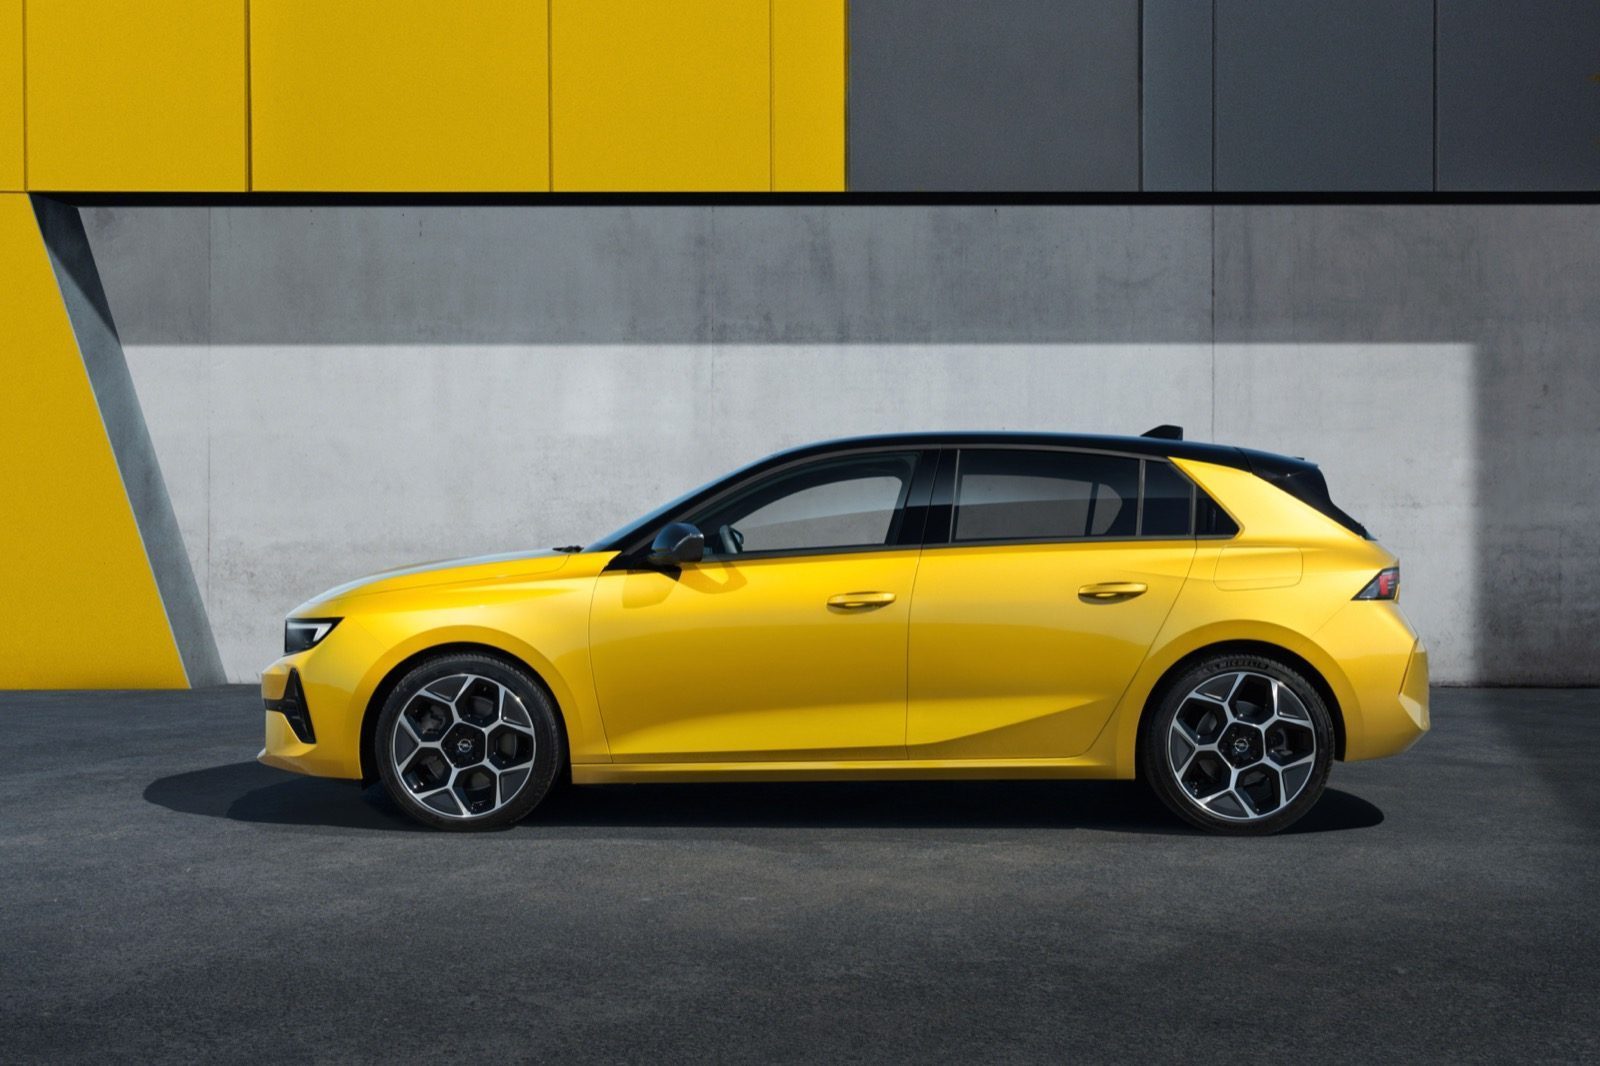 Bloeien een beetje veiligheid Update] Compleet nieuwe Opel Astra, elektrisch pas in 2022 - Autoblog.nl